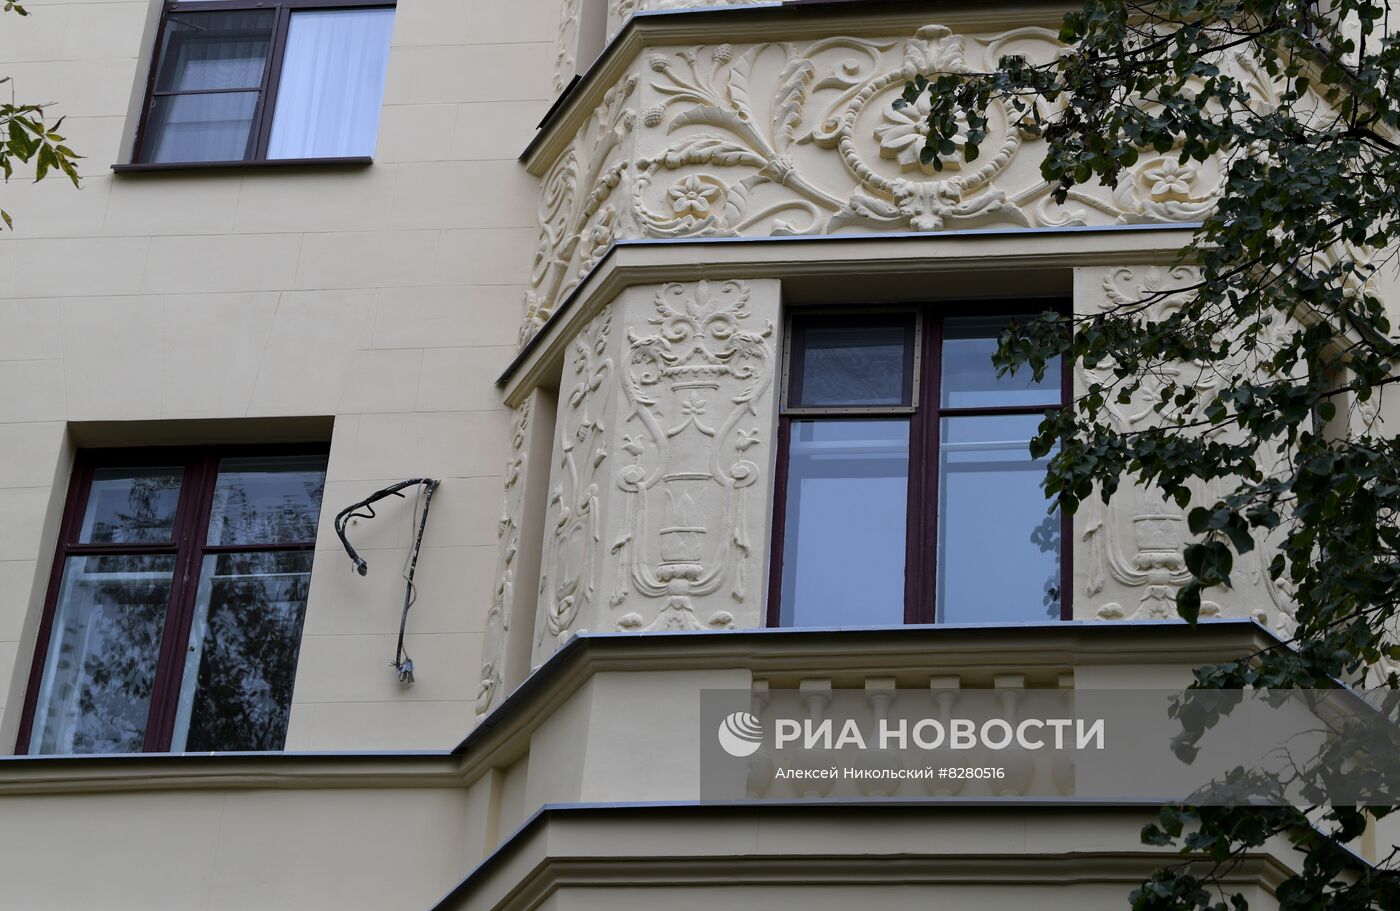 Дом на Поварской улице в Москве после реставрации и капремонта